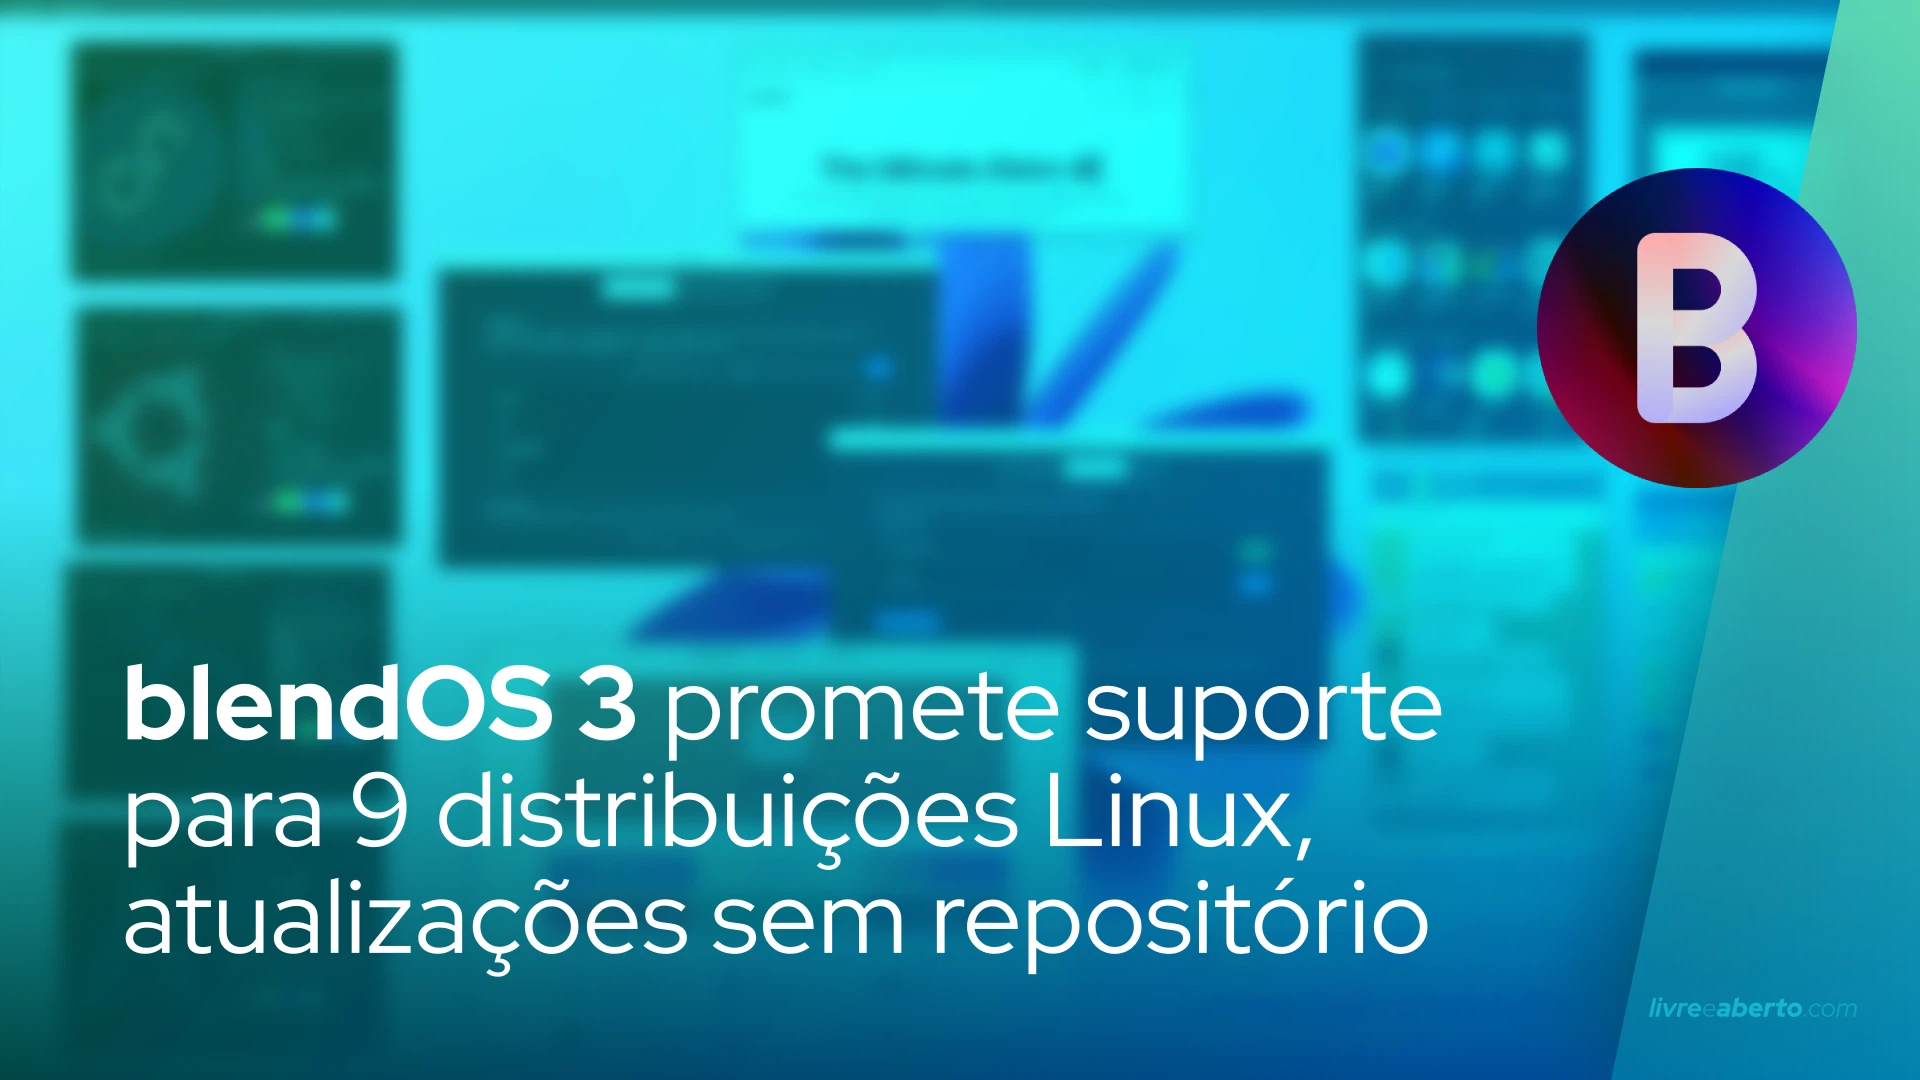 blendOS 3 promete suporte para 9 distribuições Linux, atualizações sem repositório